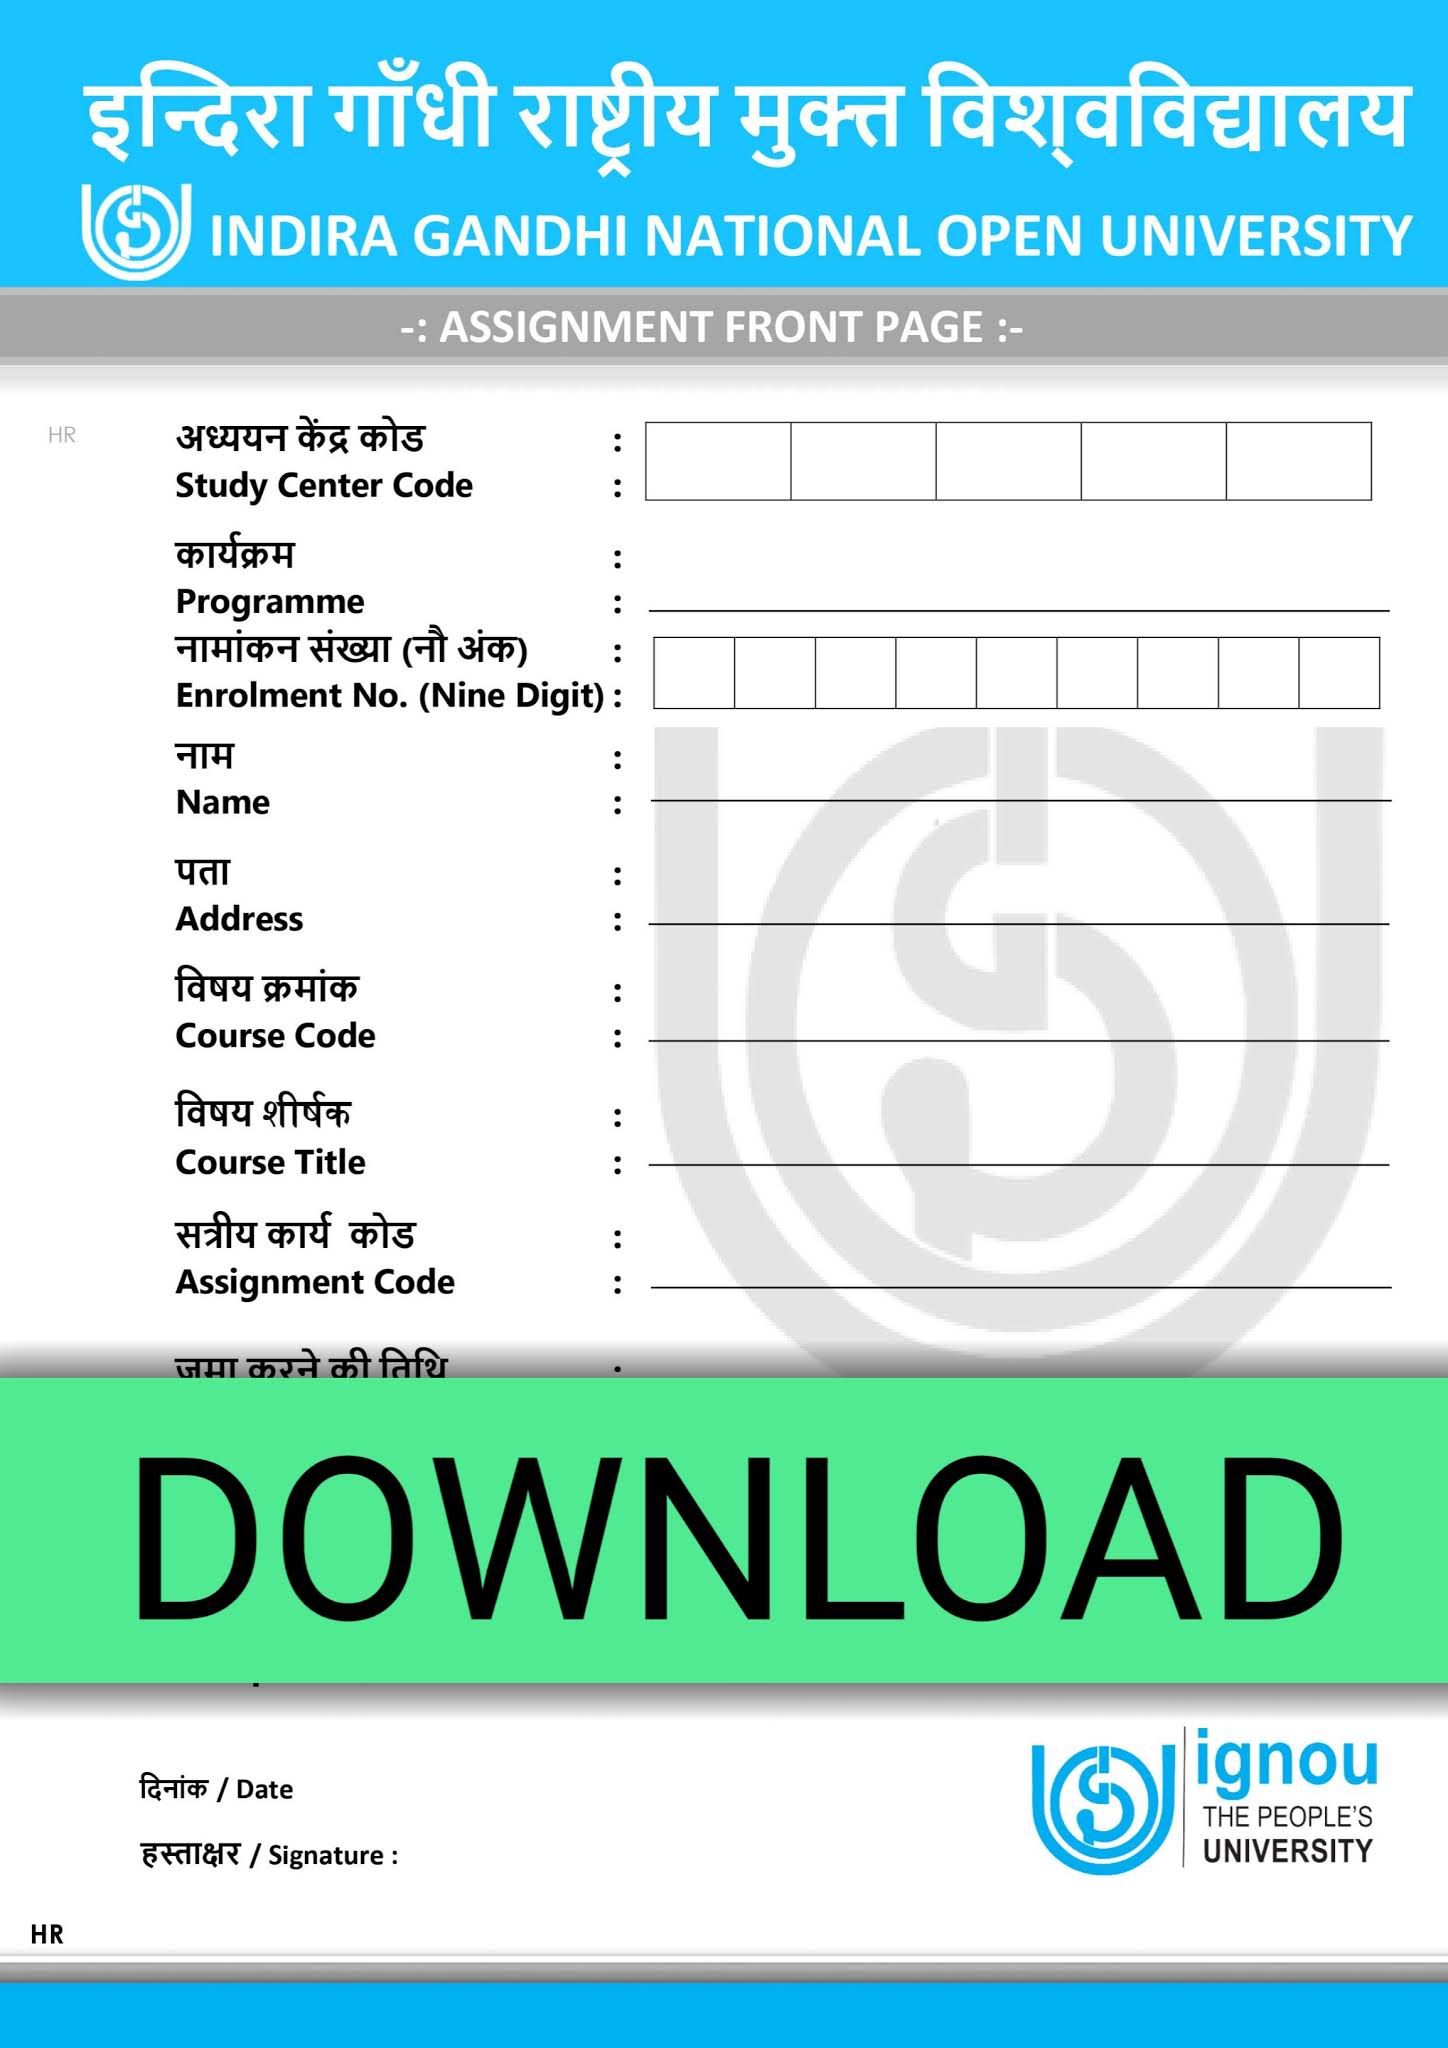 ignou m.com assignment front page pdf